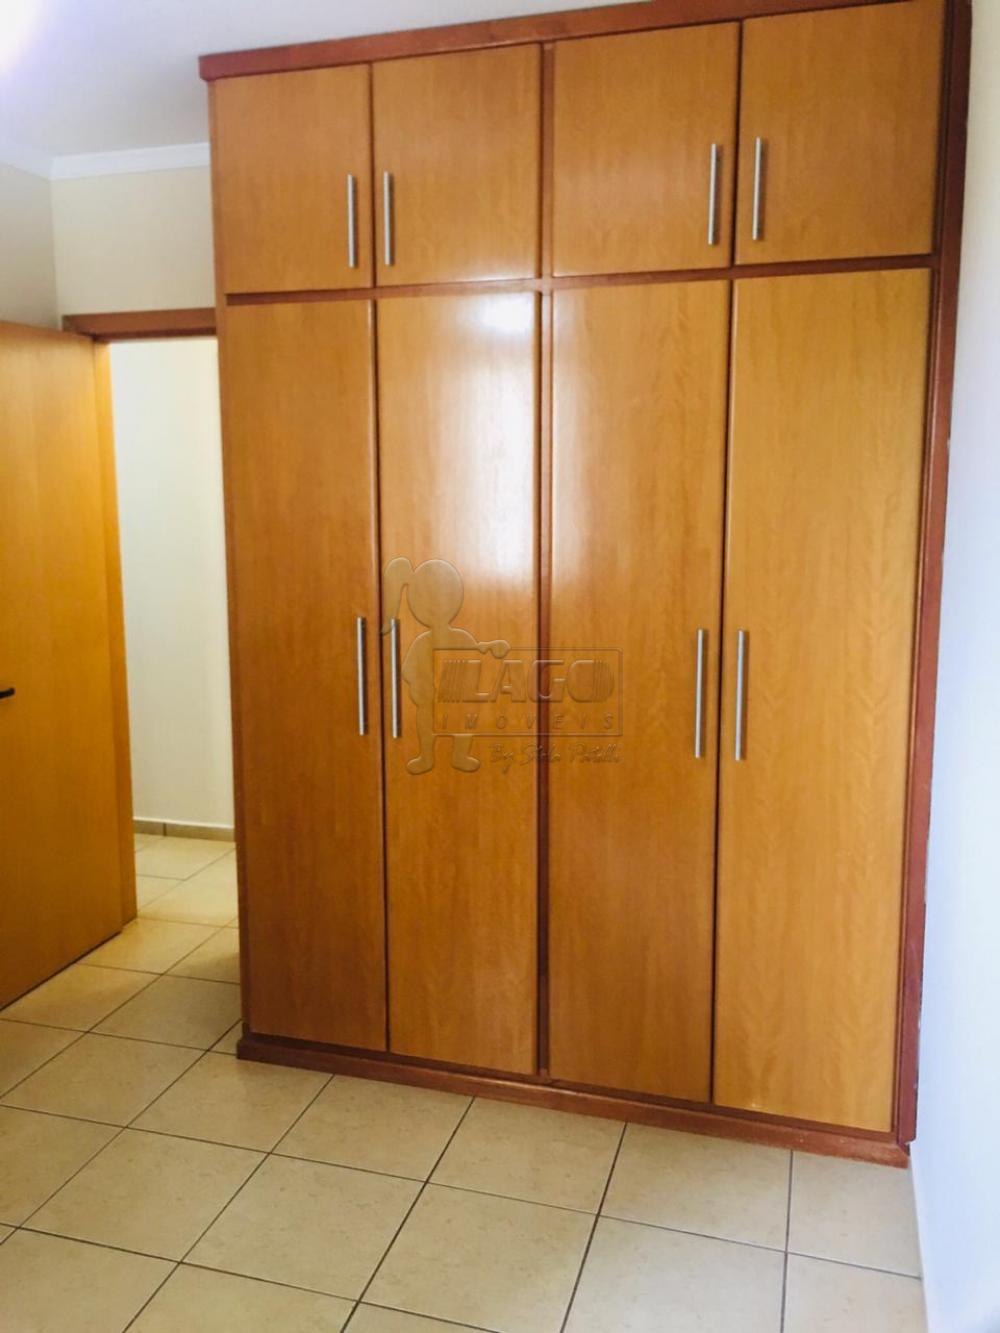 Alugar Apartamentos / Padrão em Ribeirão Preto R$ 2.700,00 - Foto 15